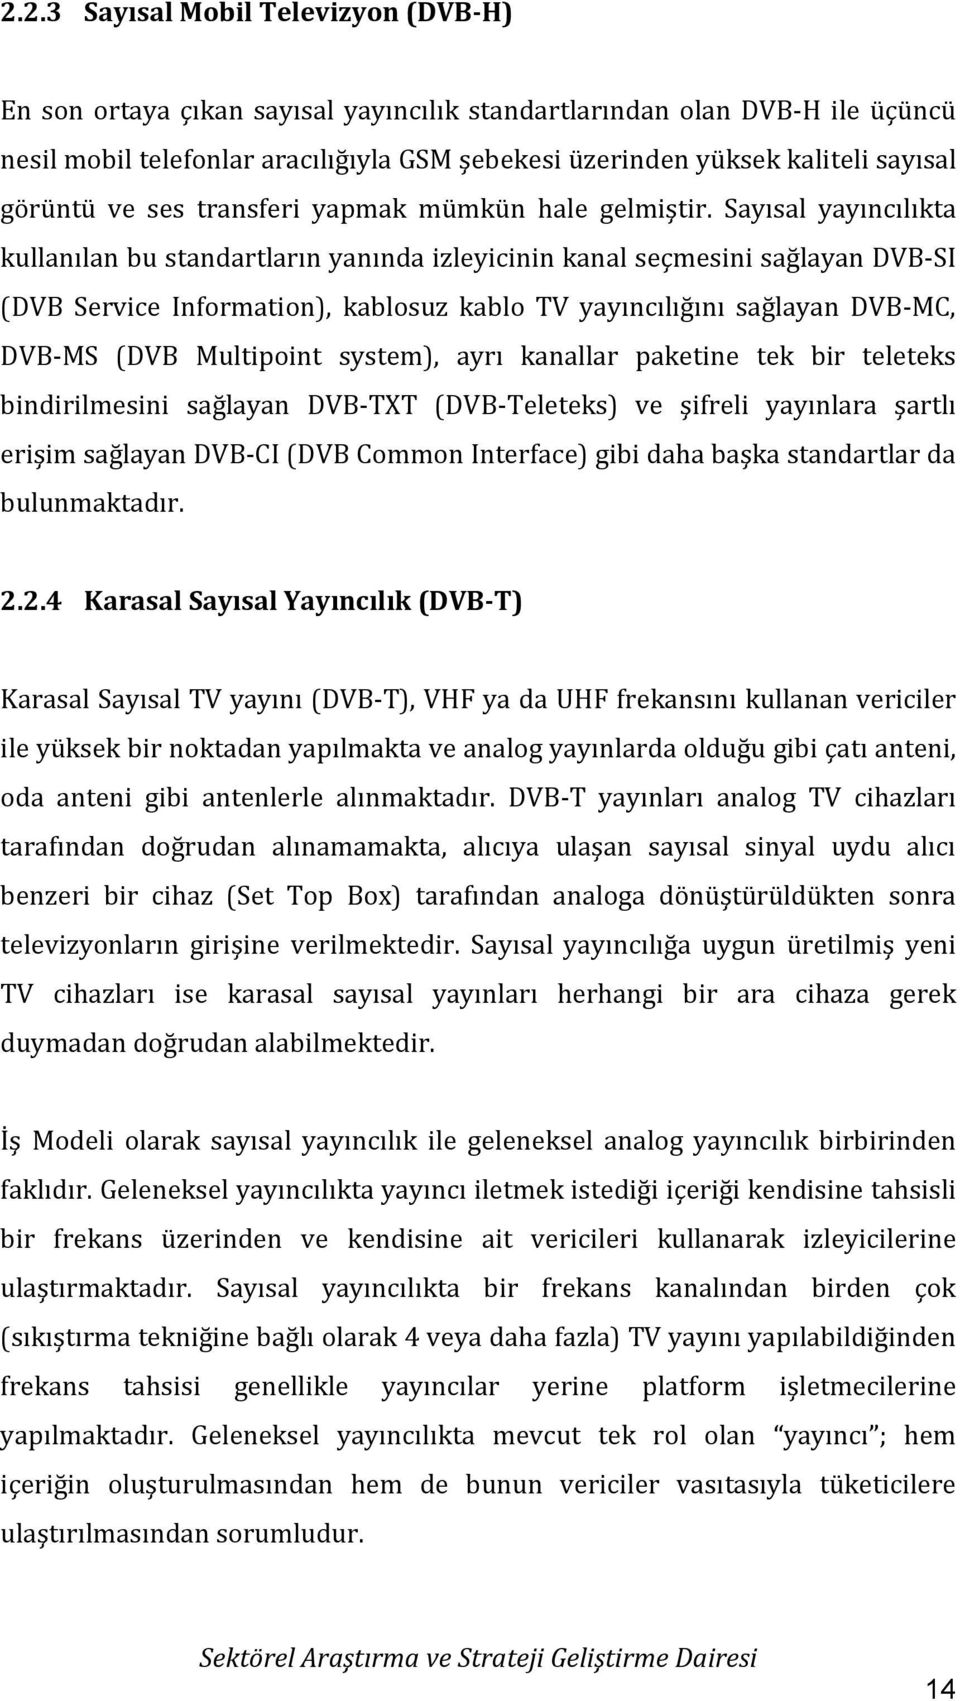 Sayısal yayıncılıkta kullanılan bu standartların yanında izleyicinin kanal seçmesini sağlayan DVB-SI (DVB Service Information), kablosuz kablo TV yayıncılığını sağlayan DVB-MC, DVB-MS (DVB Multipoint